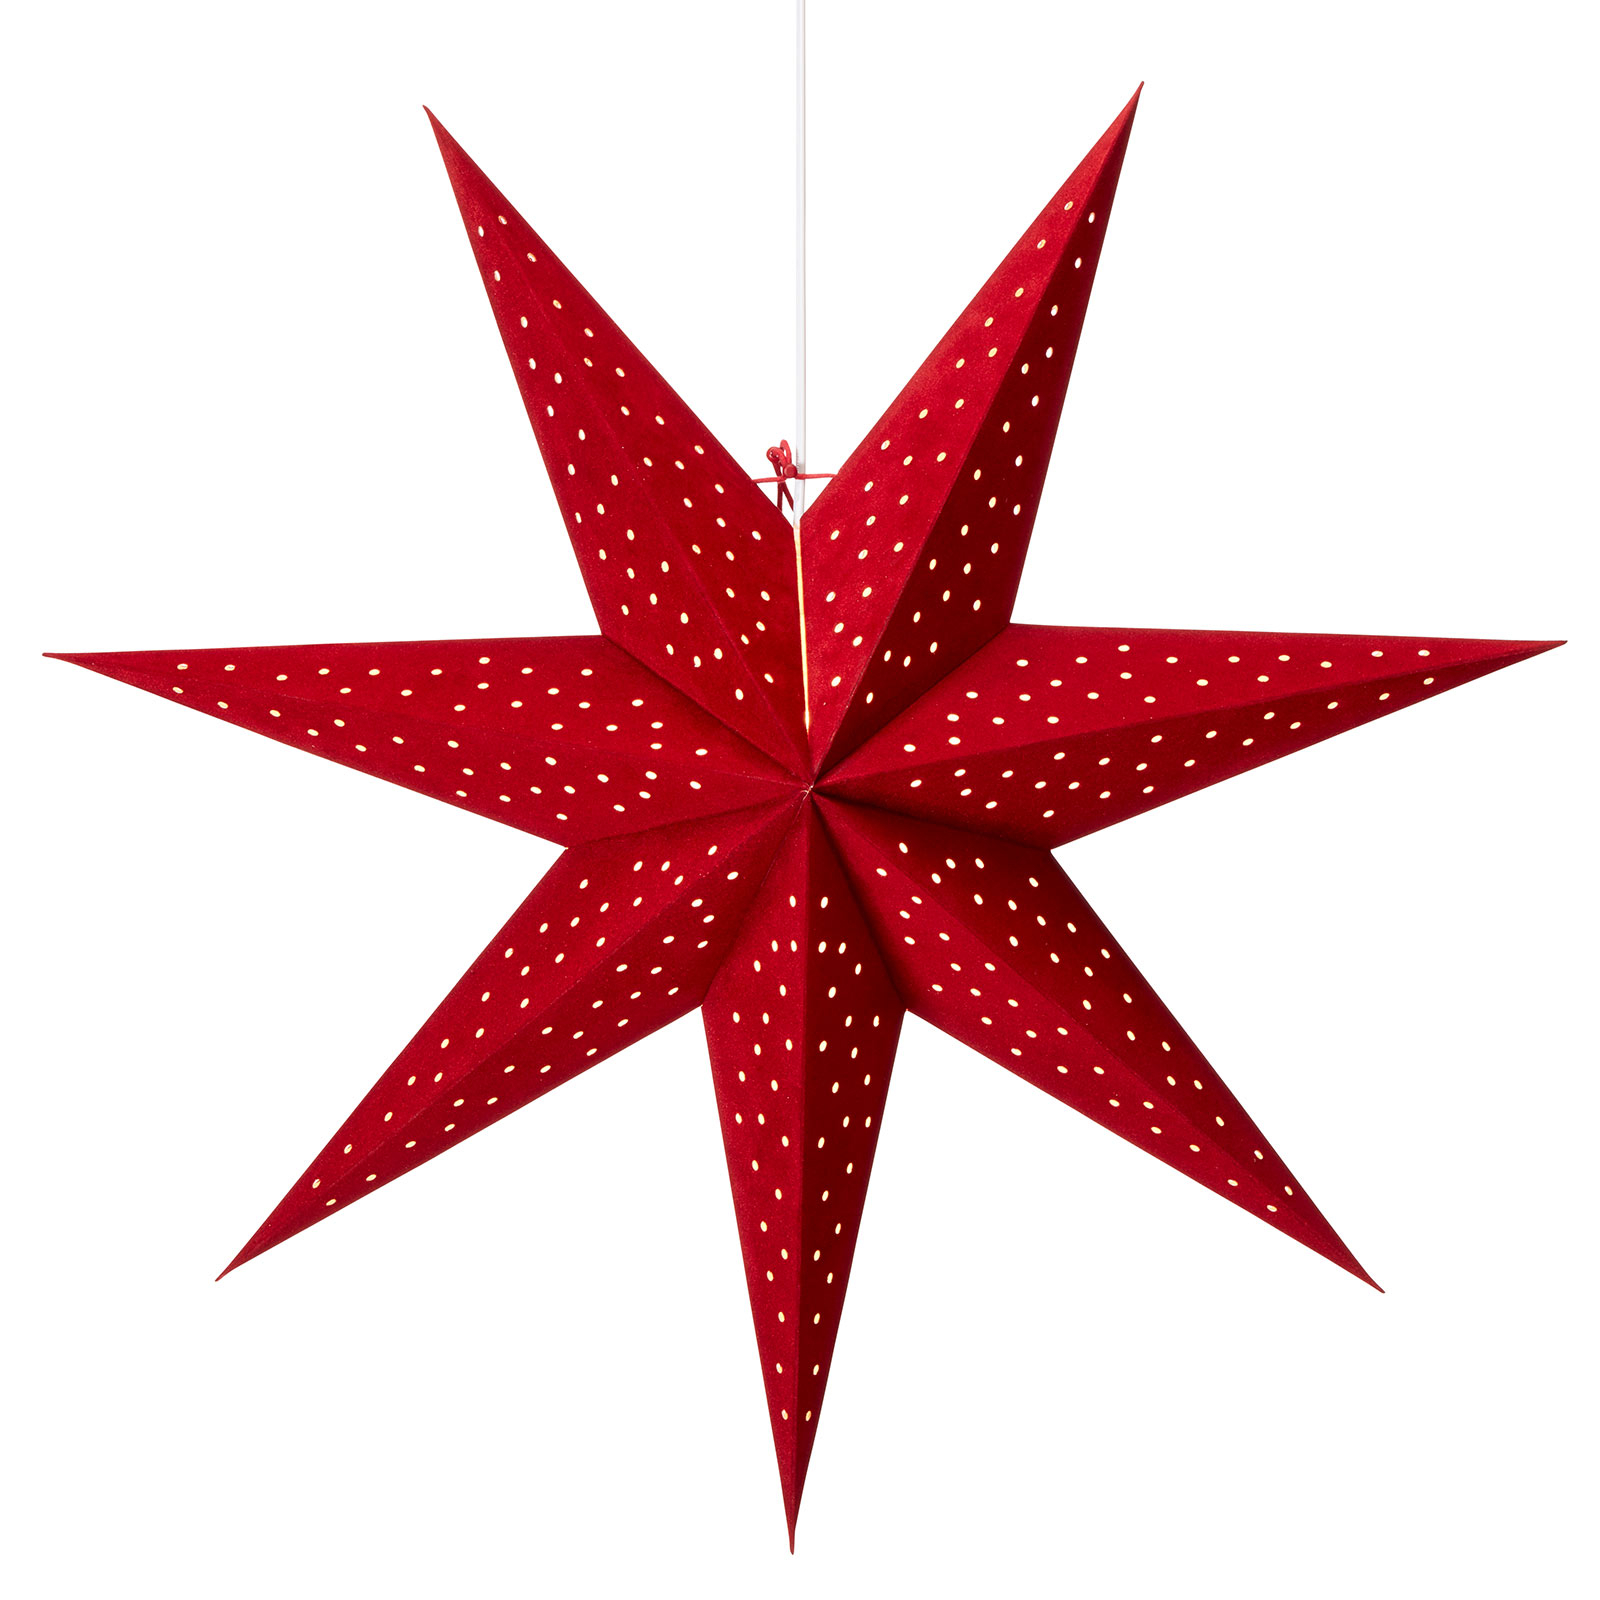 Star Clara for hanging, velvet look Ø 75 cm, red